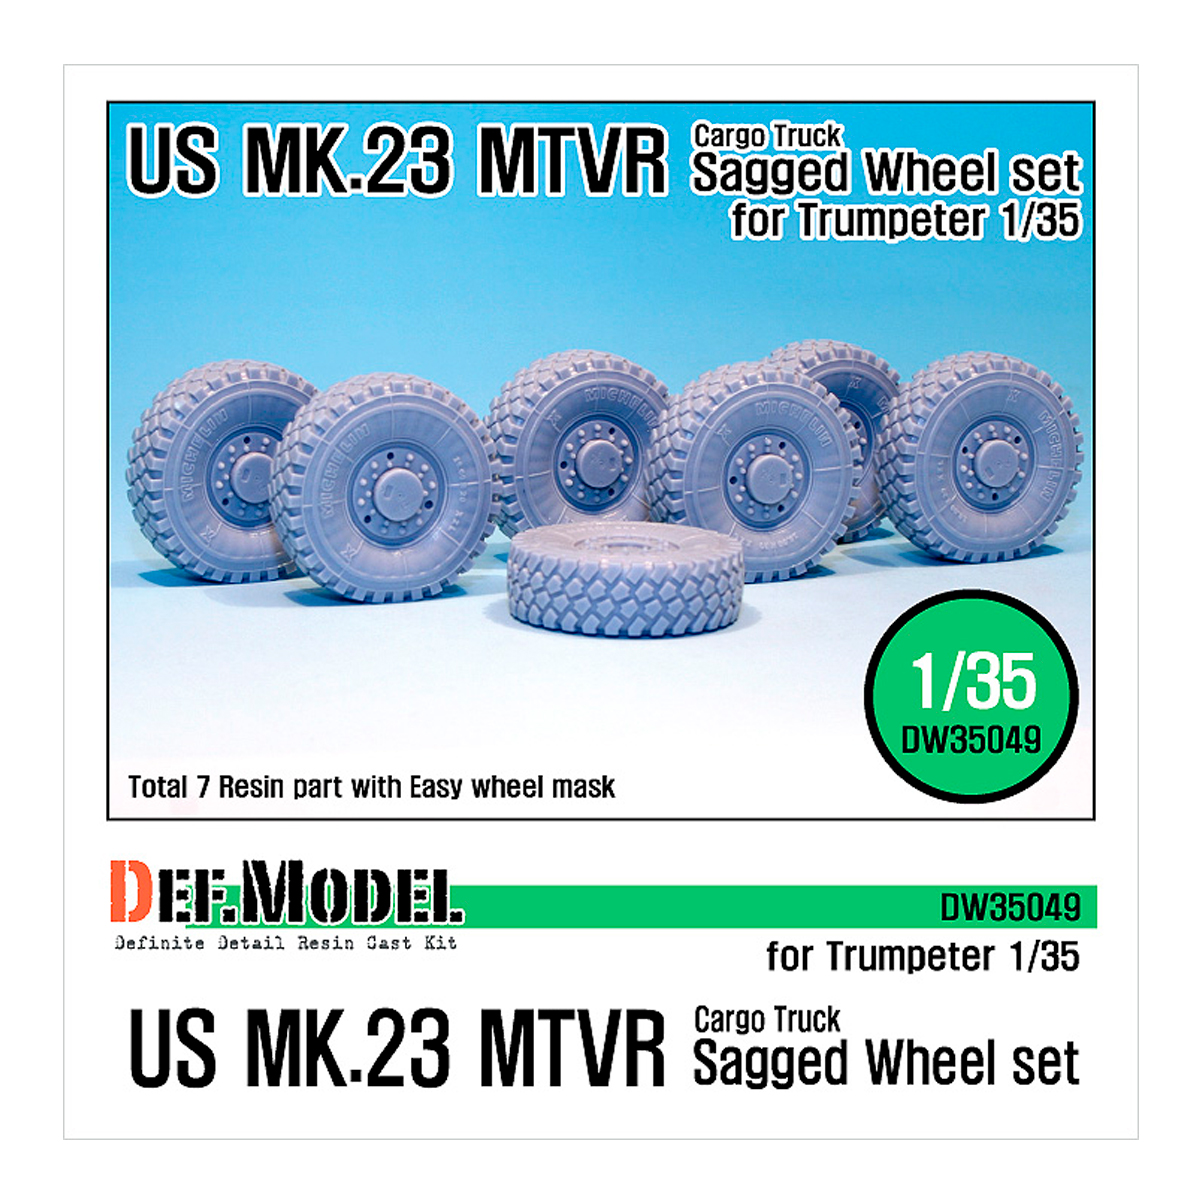 US MK.23 MTVR Sagged Wheel set (for Trumpeter 1/35)